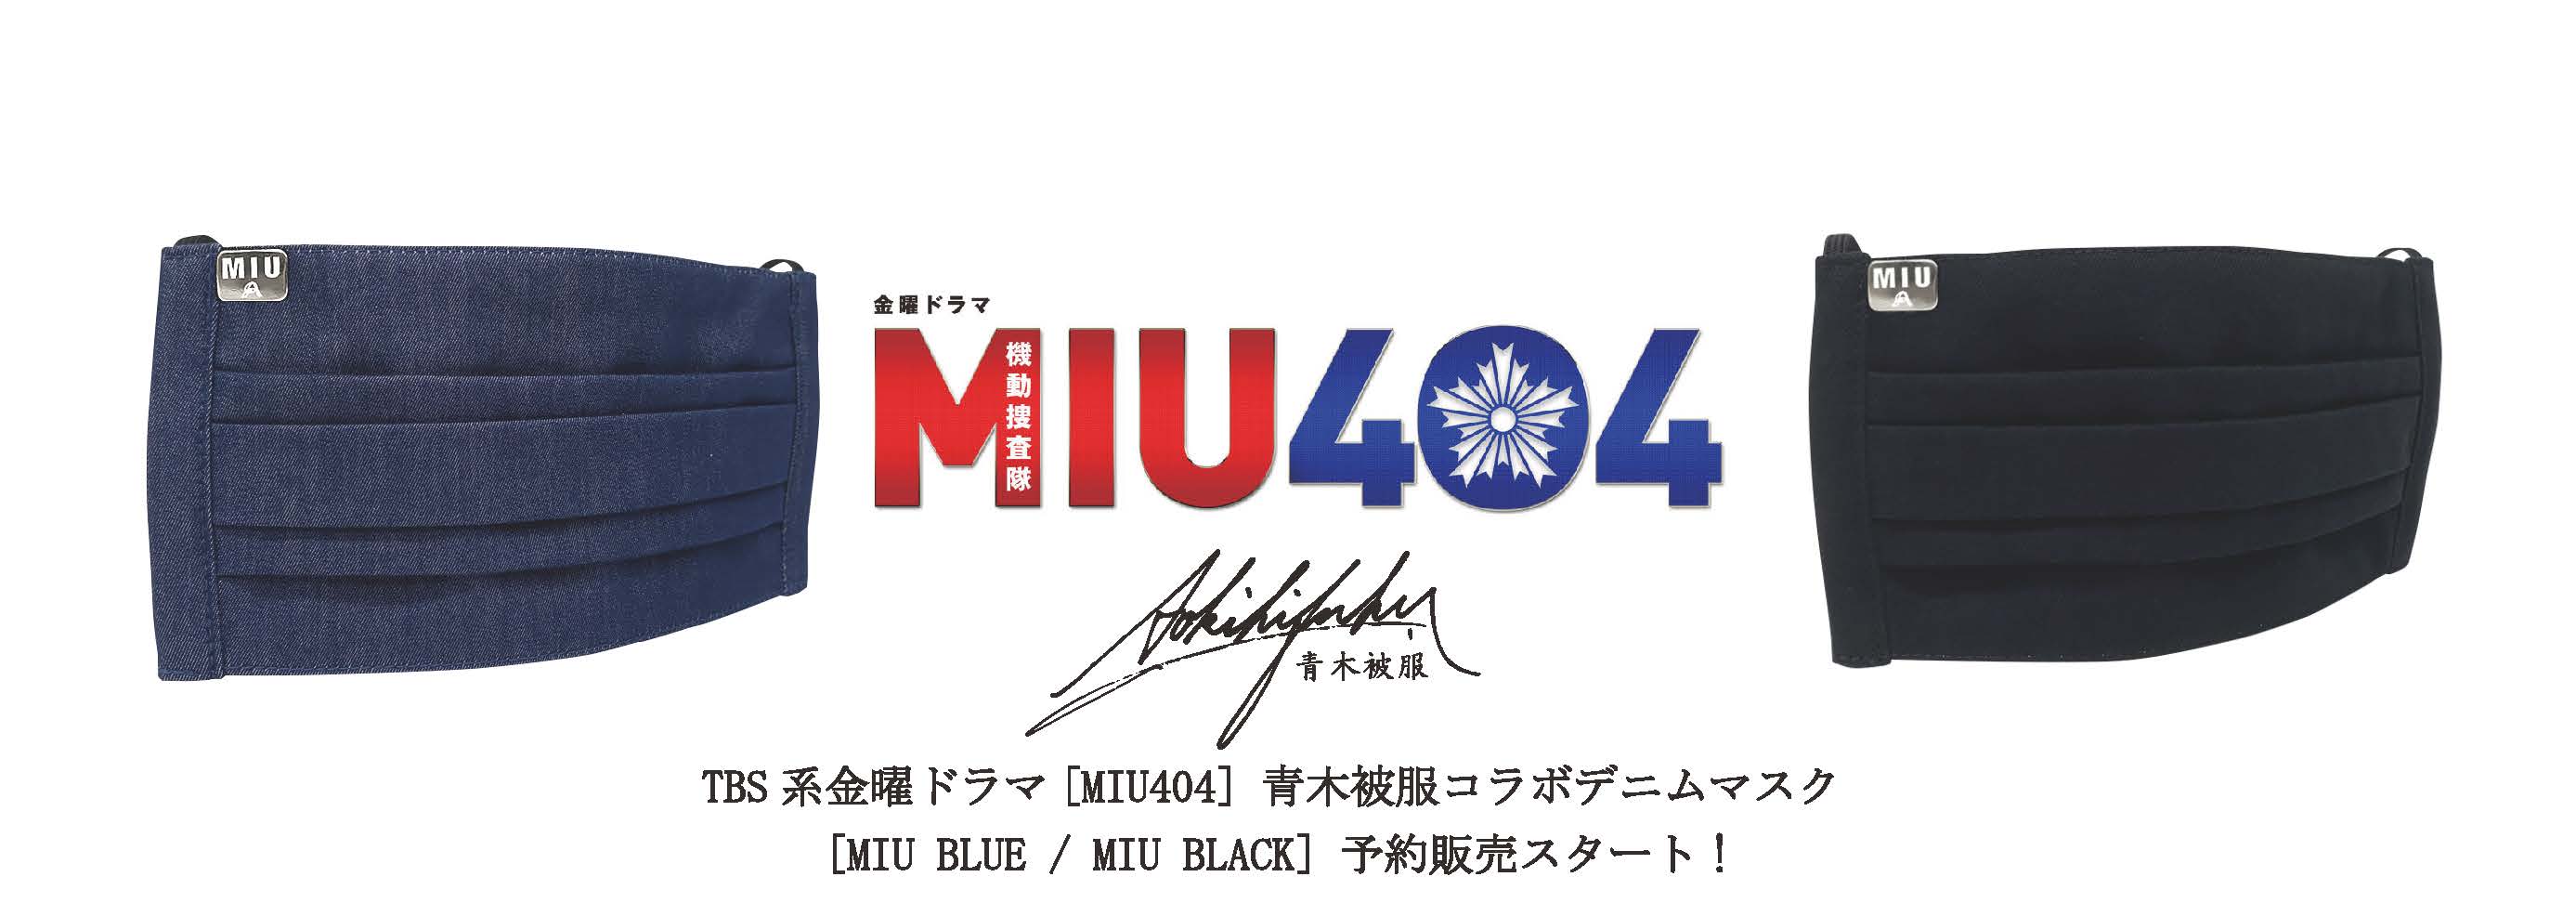 [緊急告知] 青木被服がTBS系金曜ドラマ「MIU404」とのコラボデニムマスクを予約販売開始！